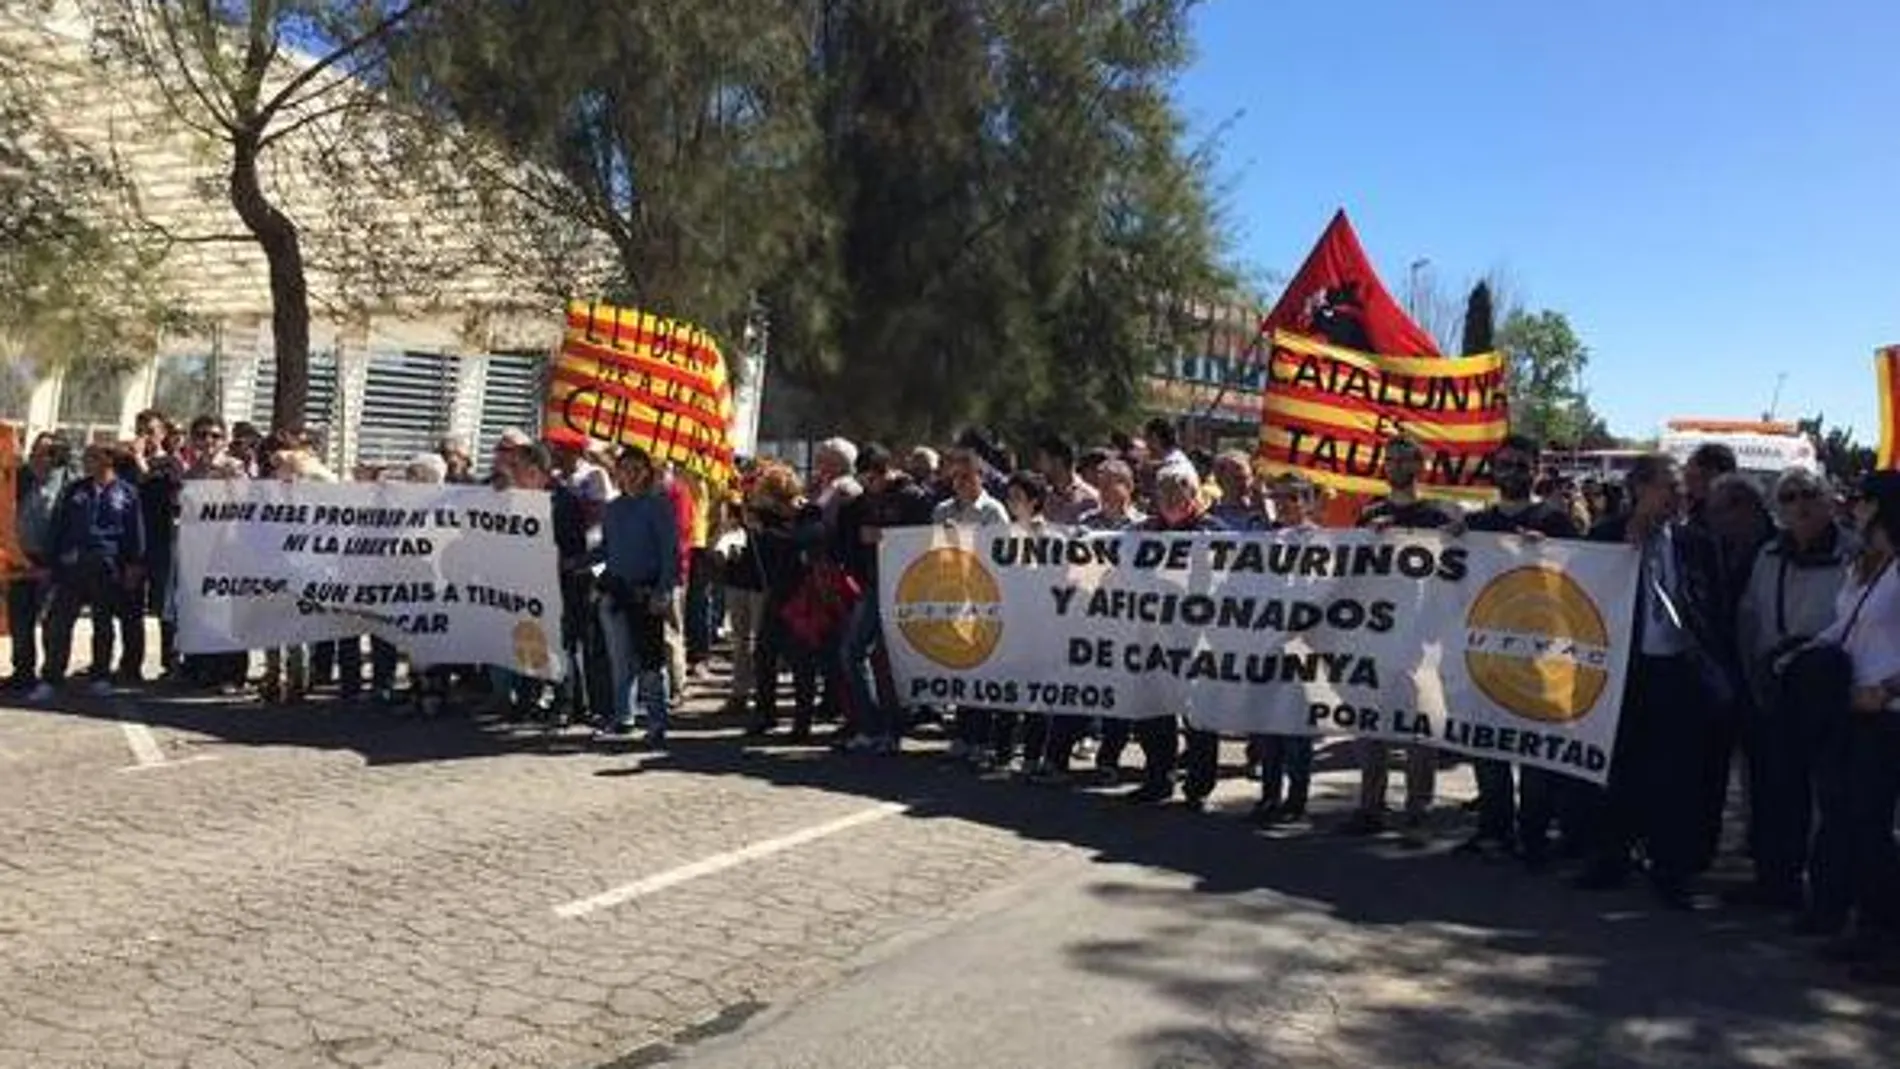 Los aficionados catalanes piden libertad en una manifestación taurina celebrada en Amposta